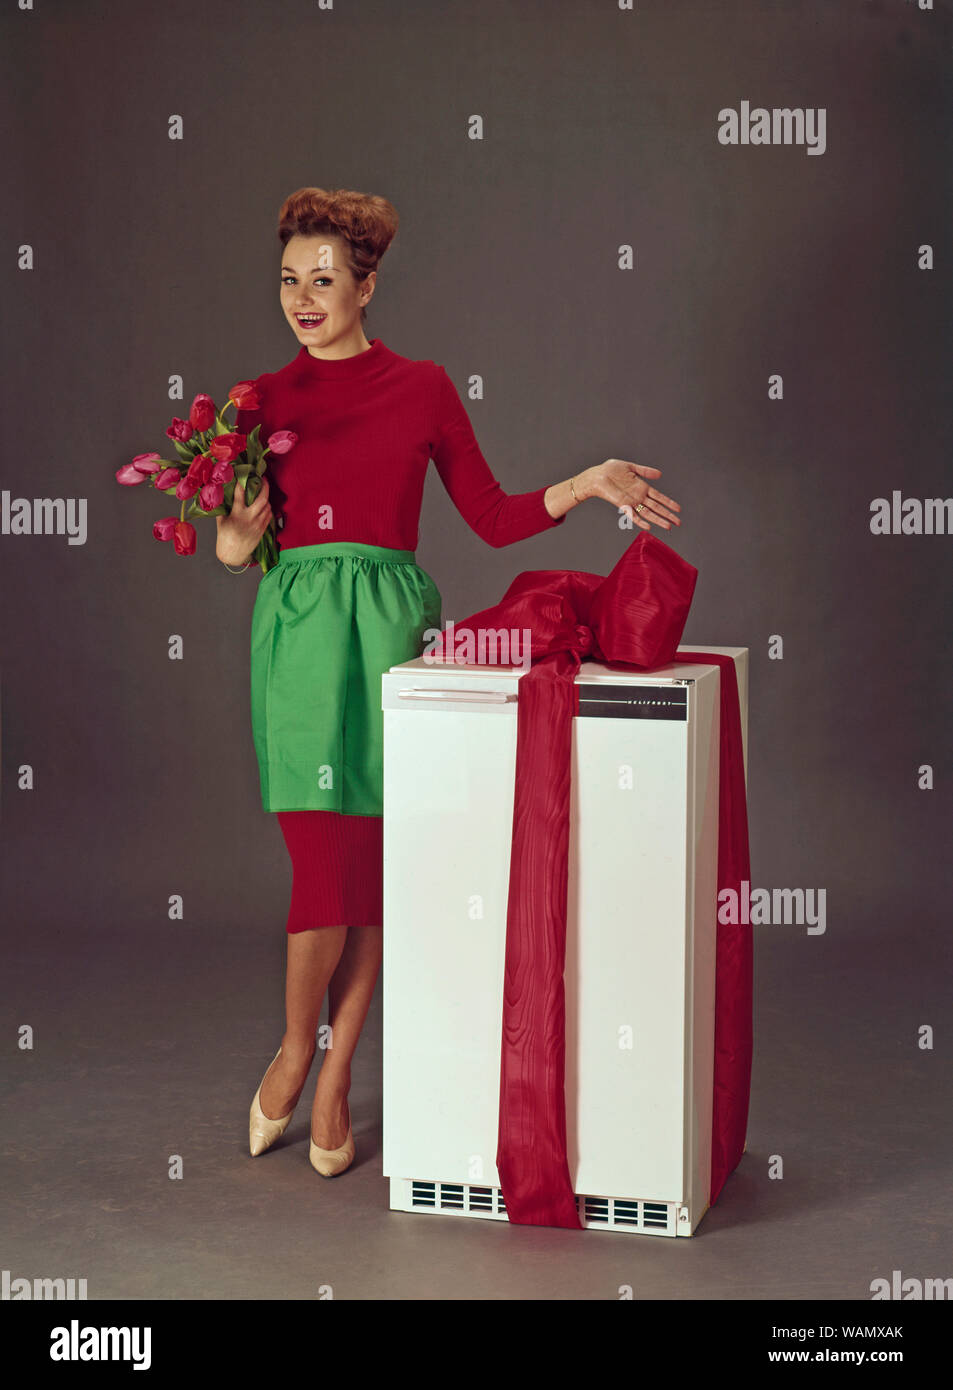 Dans les années 60. Une jeune femme est debout à côté d'un réfrigérateur enveloppé dans un ruban rouge. La Suède des années 1960. ref CV33 Banque D'Images